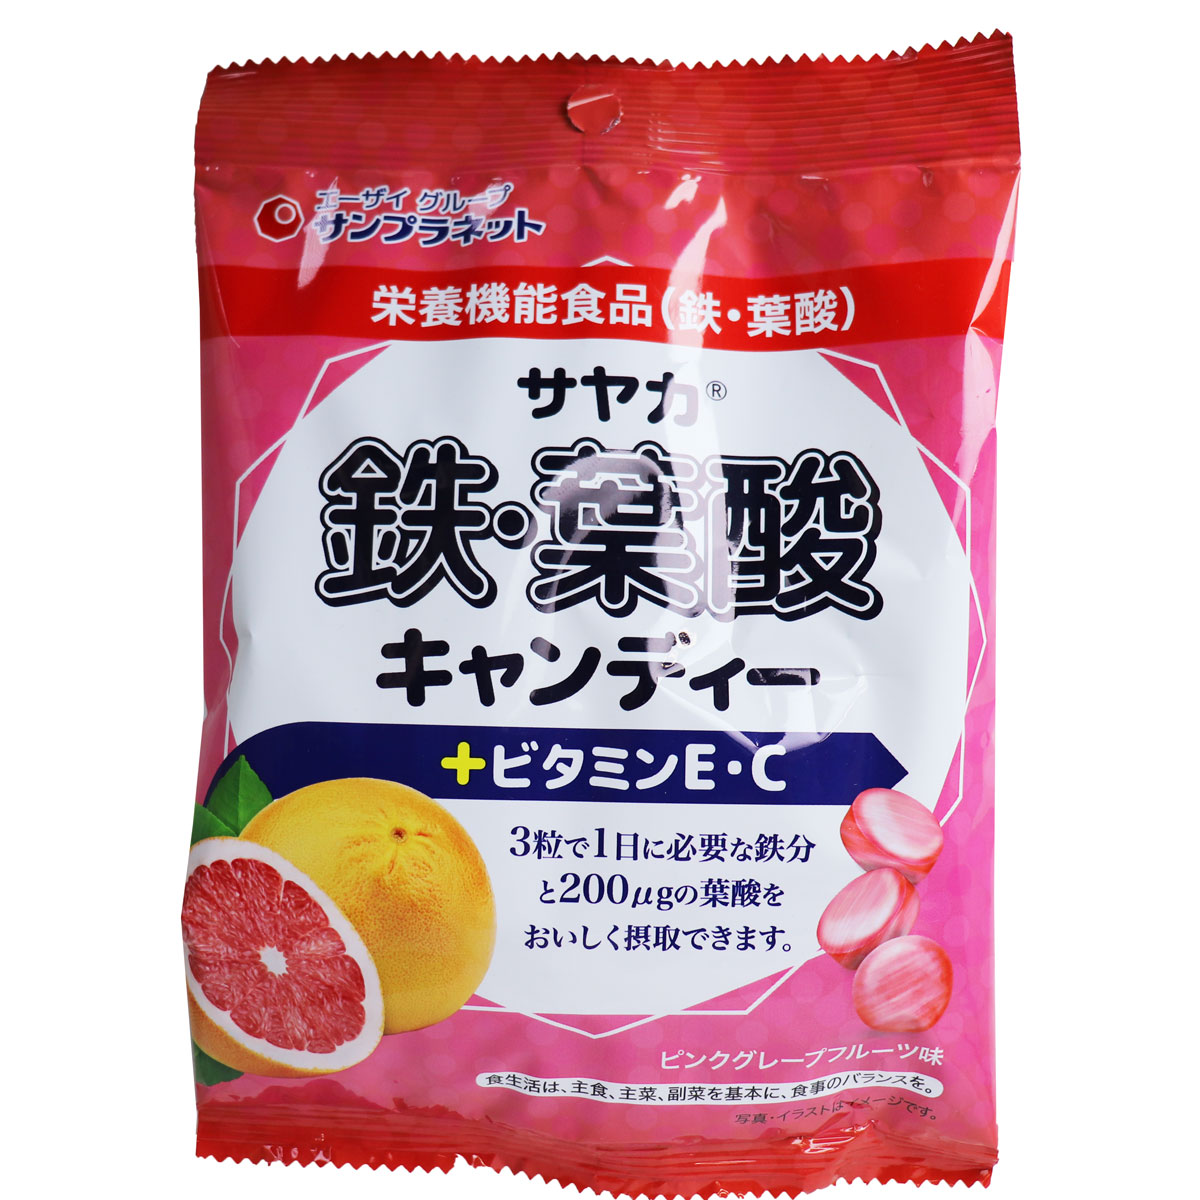 ※[廃盤]サヤカ 鉄・葉酸キャンディー ピンクグレープフルーツ味 65g